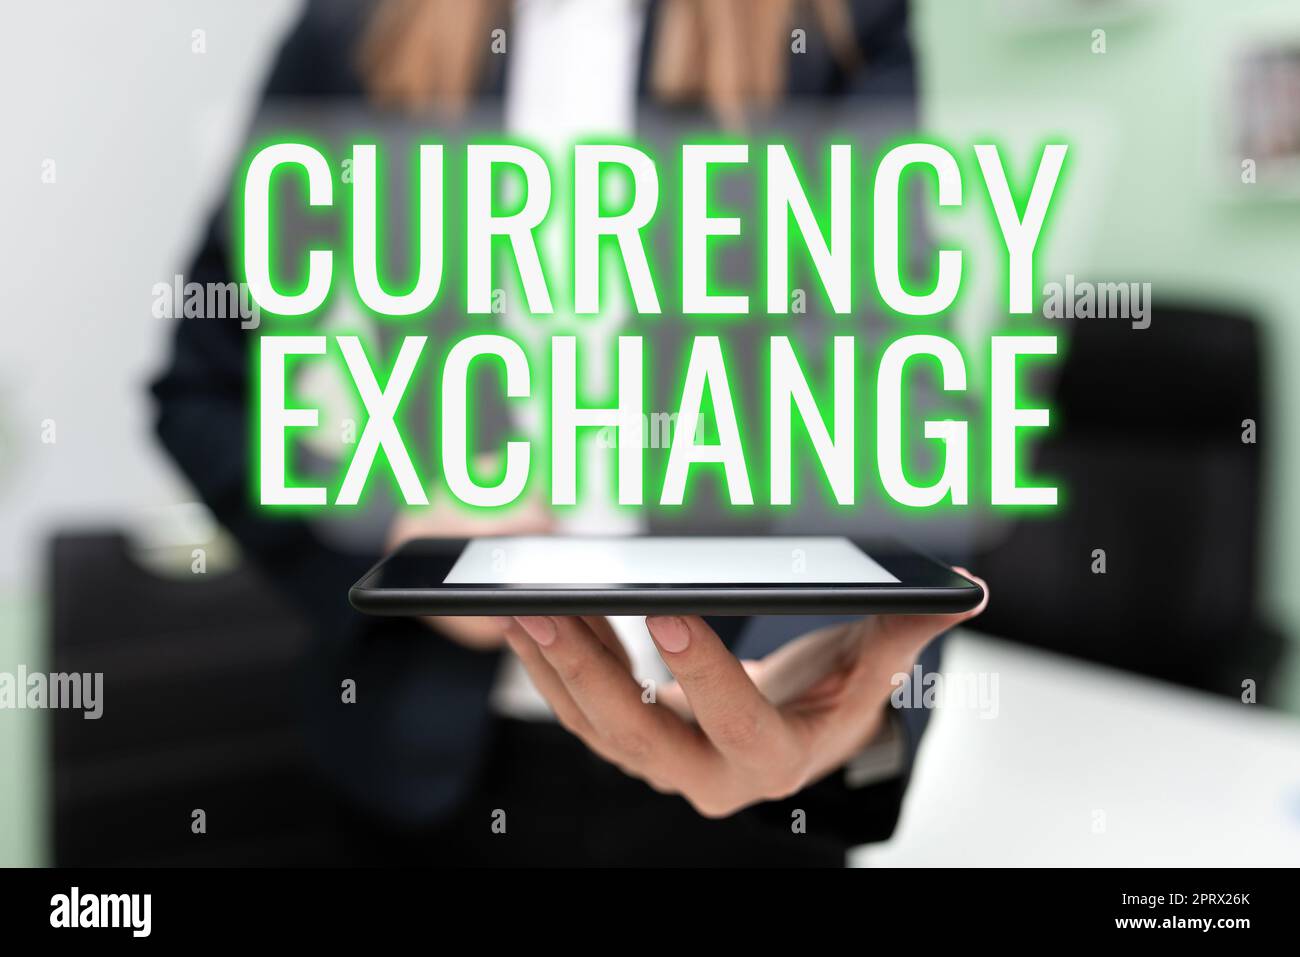 Textüberschrift zur Darstellung des Währungsumtauschprozesses beim Wechseln einer Währung in einen anderen Devisen. Konzept bedeutet Prozess des Wechsels einer Währung in einen anderen Devisen Stockfoto